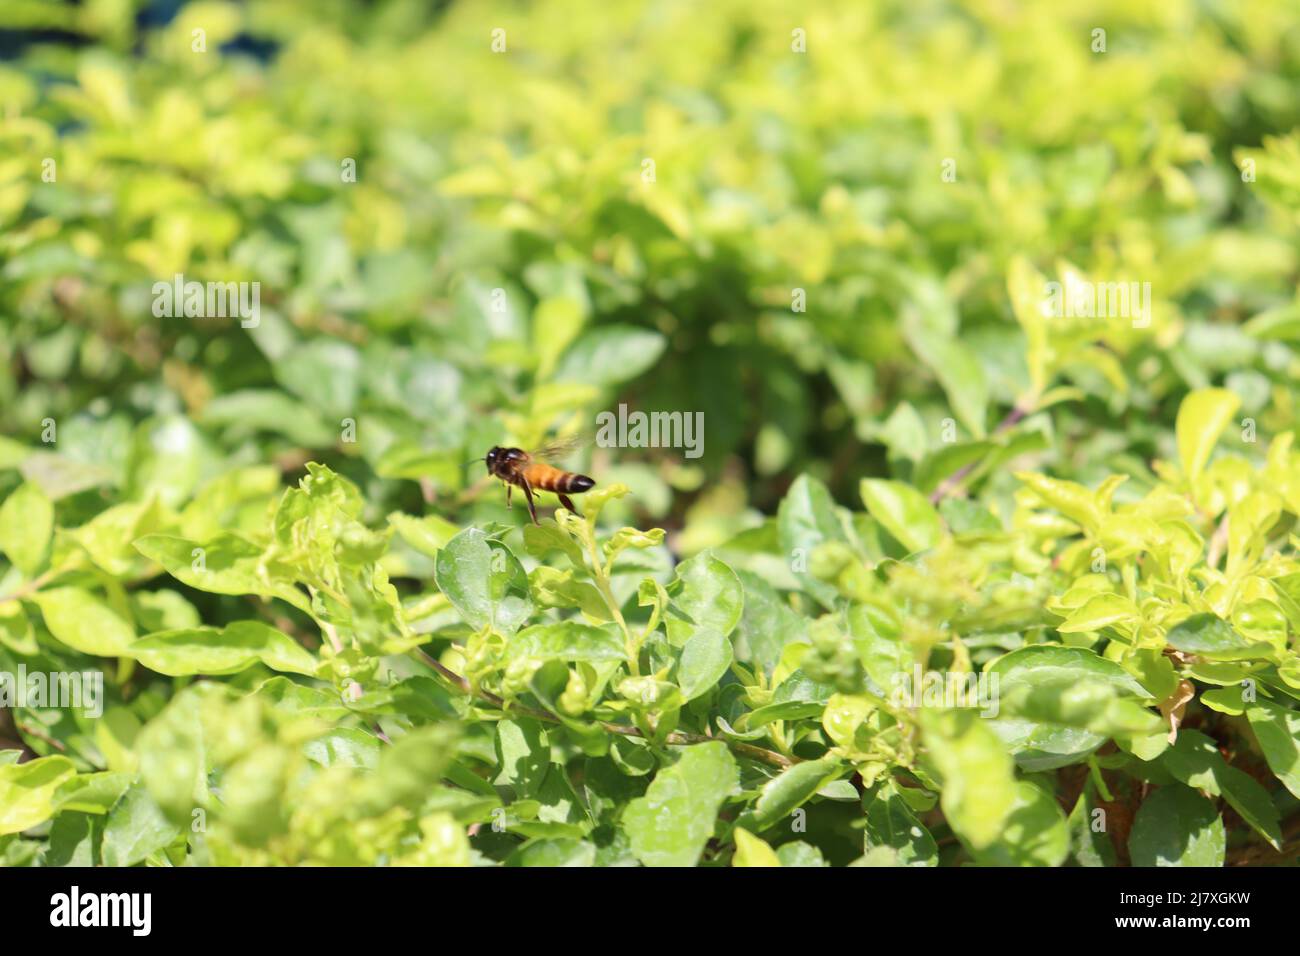 Honigbiene fliegend Grüne junge Blätter der Rote Bete wachsen in Gartenrübenblättern aus nächster Nähe Stockfoto